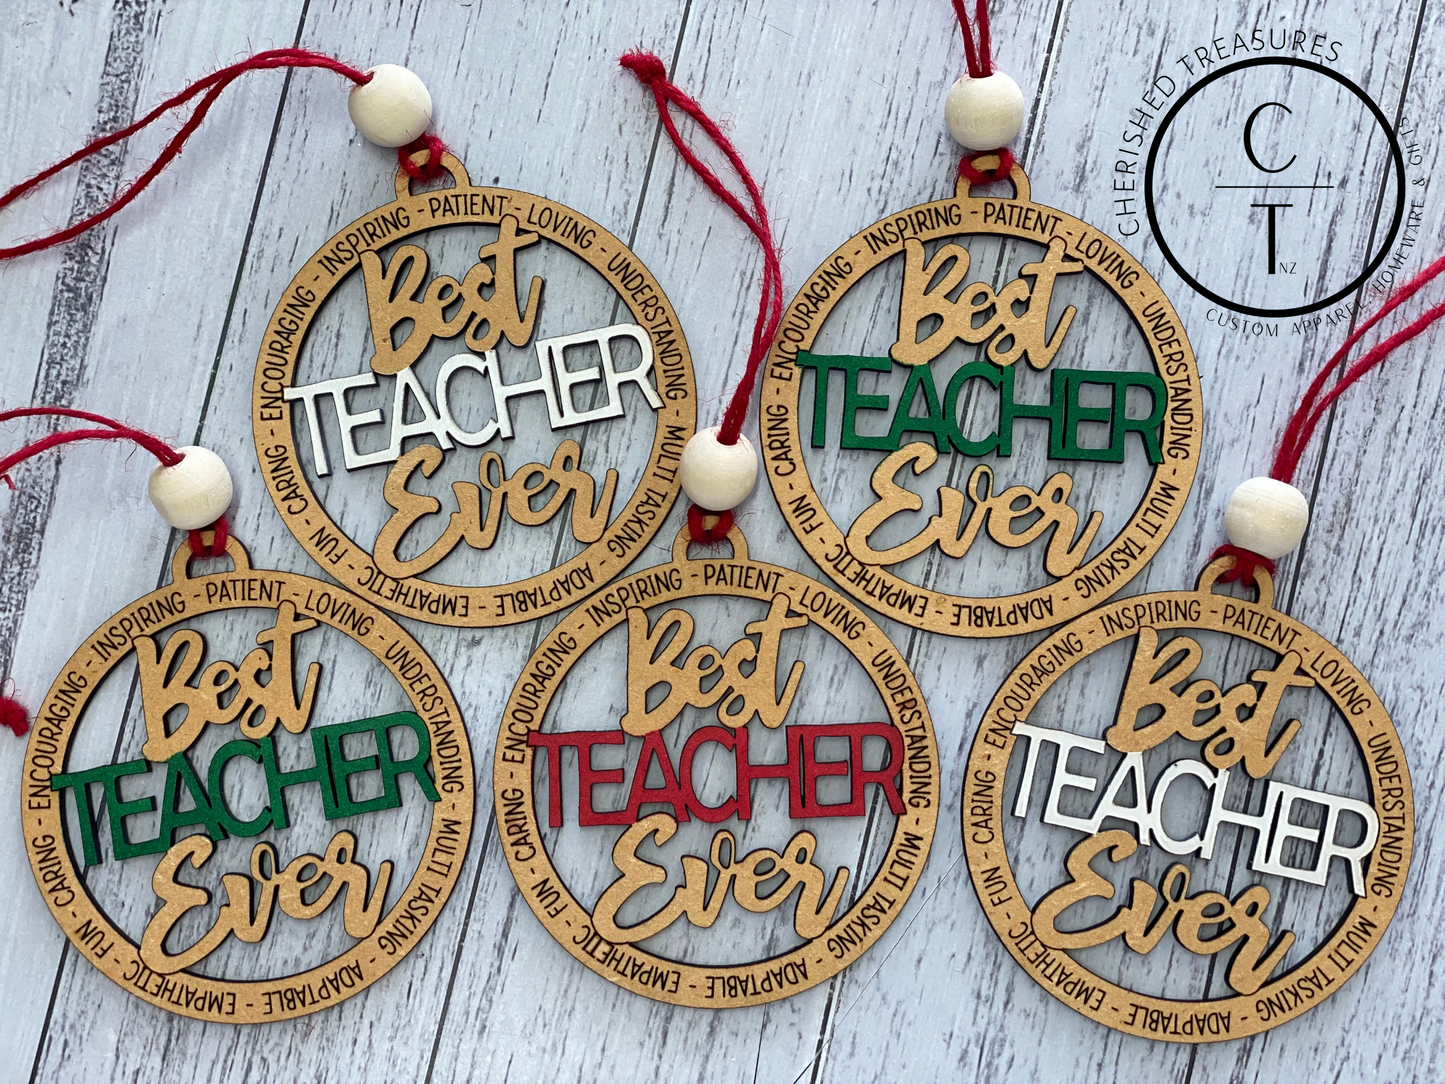 Best TEACHER Ever ornament